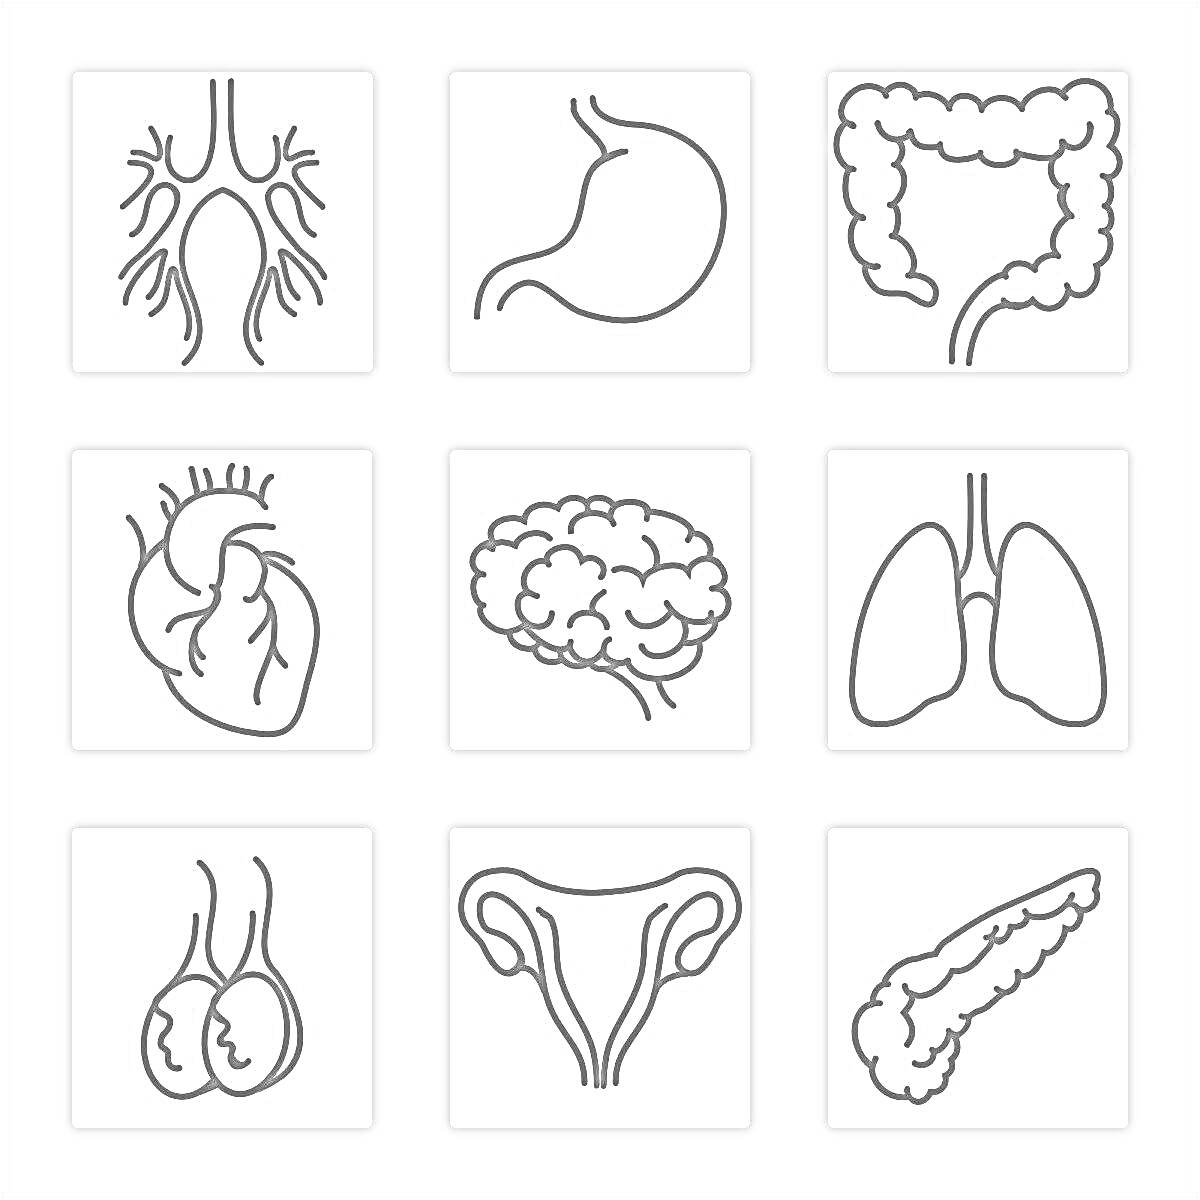 Дыхательная система, желудок, толстый кишечник, сердце, мозг, легкие, почки, женская репродуктивная система, поджелудочная железа